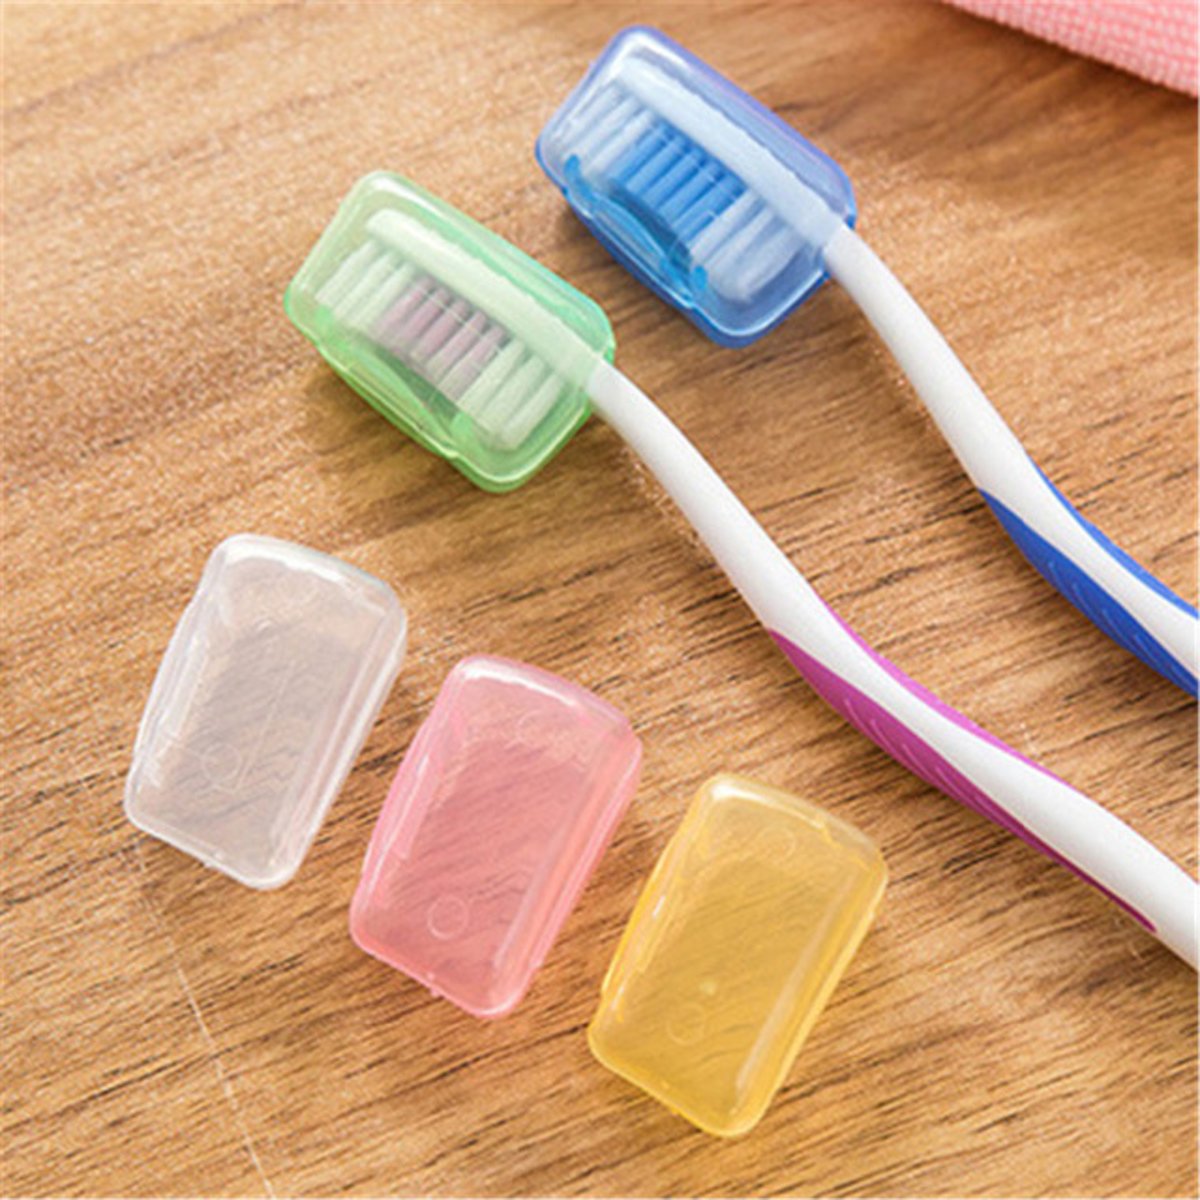 Зошто никогаш не треба да ставате пластично капаче на вашата четка за заби?